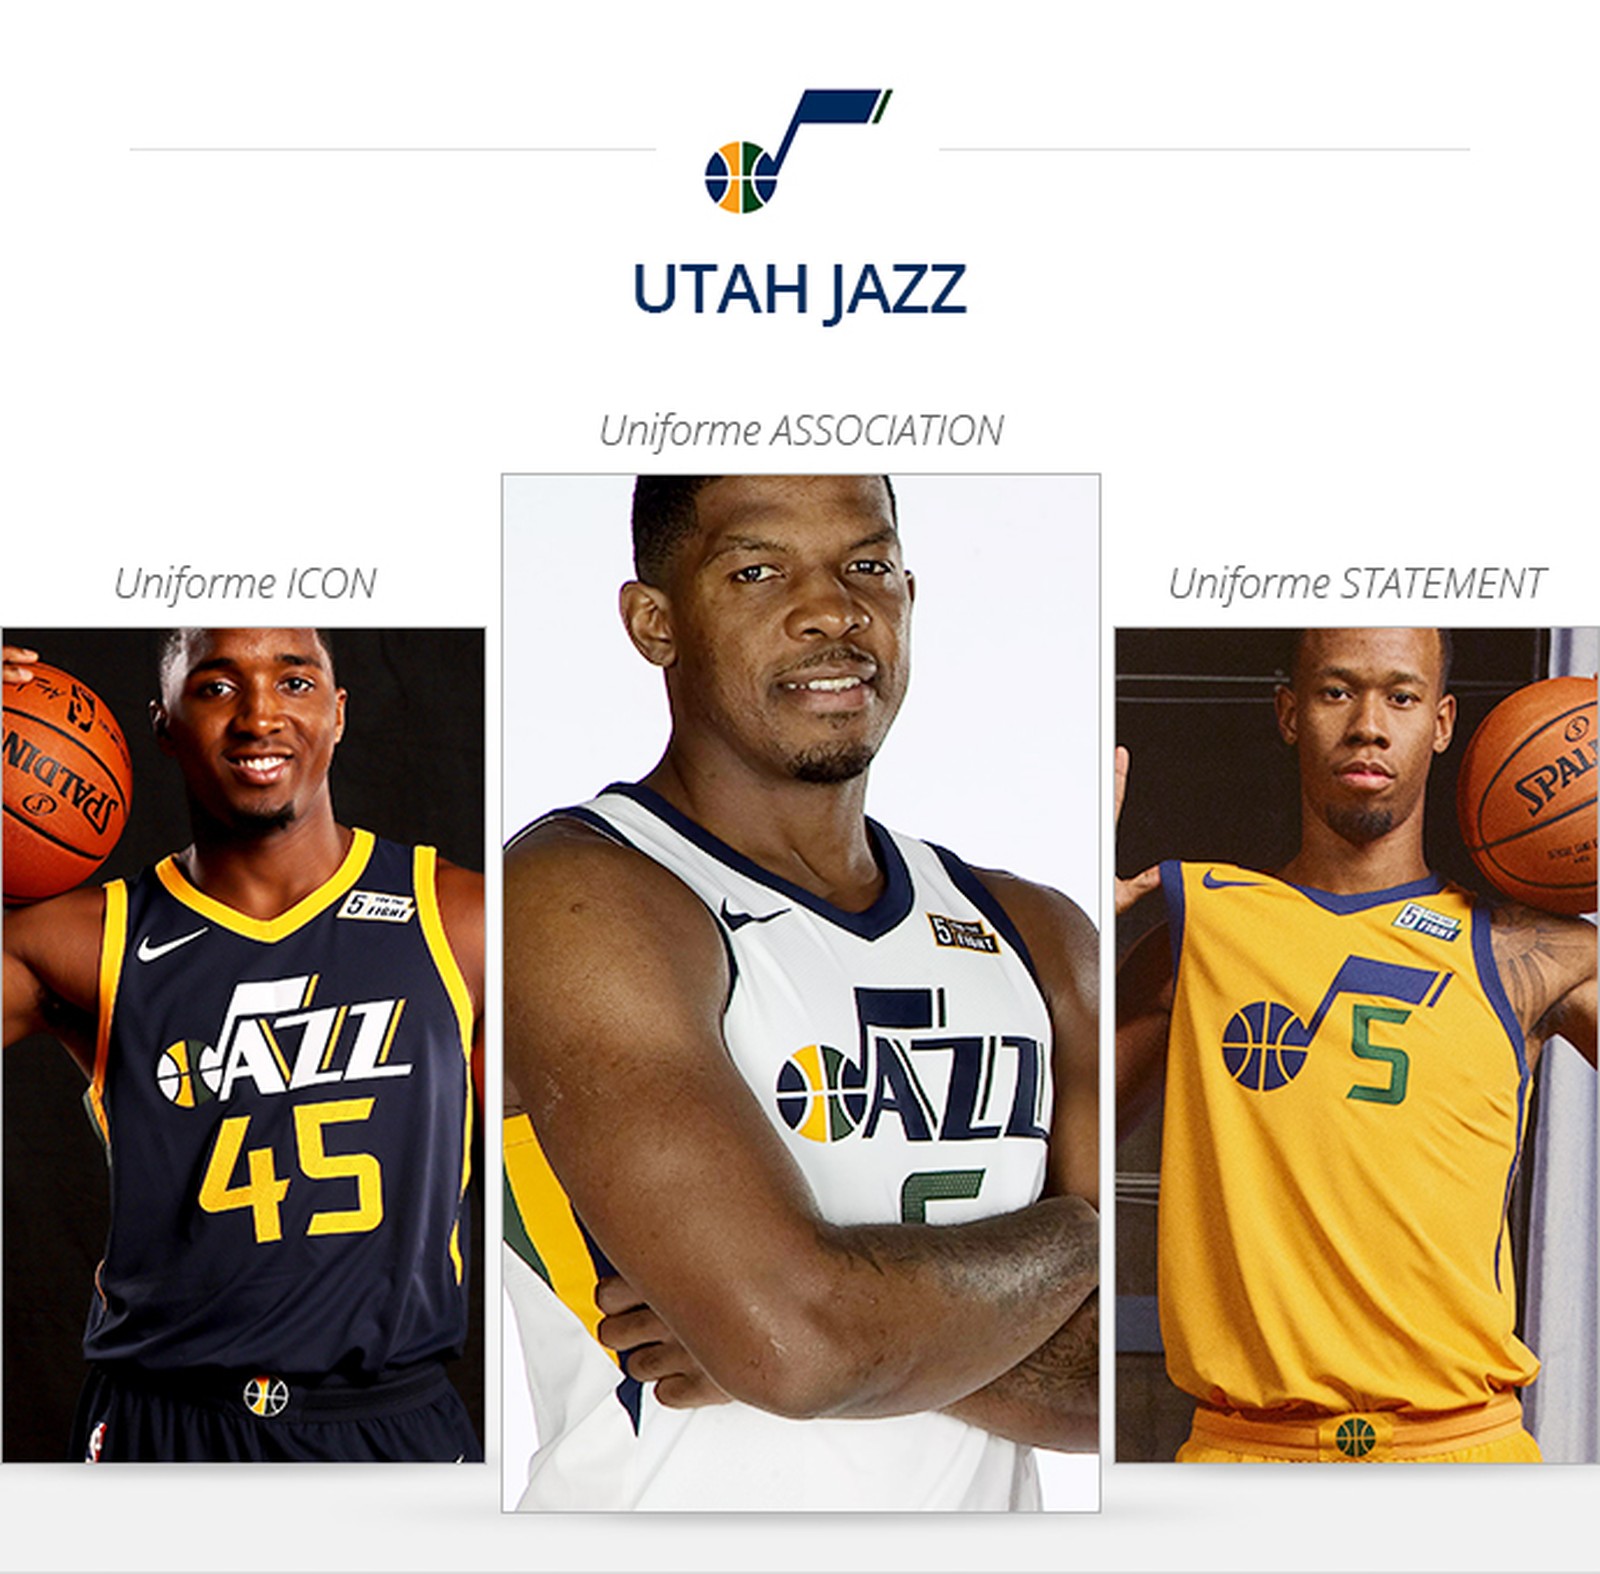 Uniformes Utah Jazz saison 2017/18